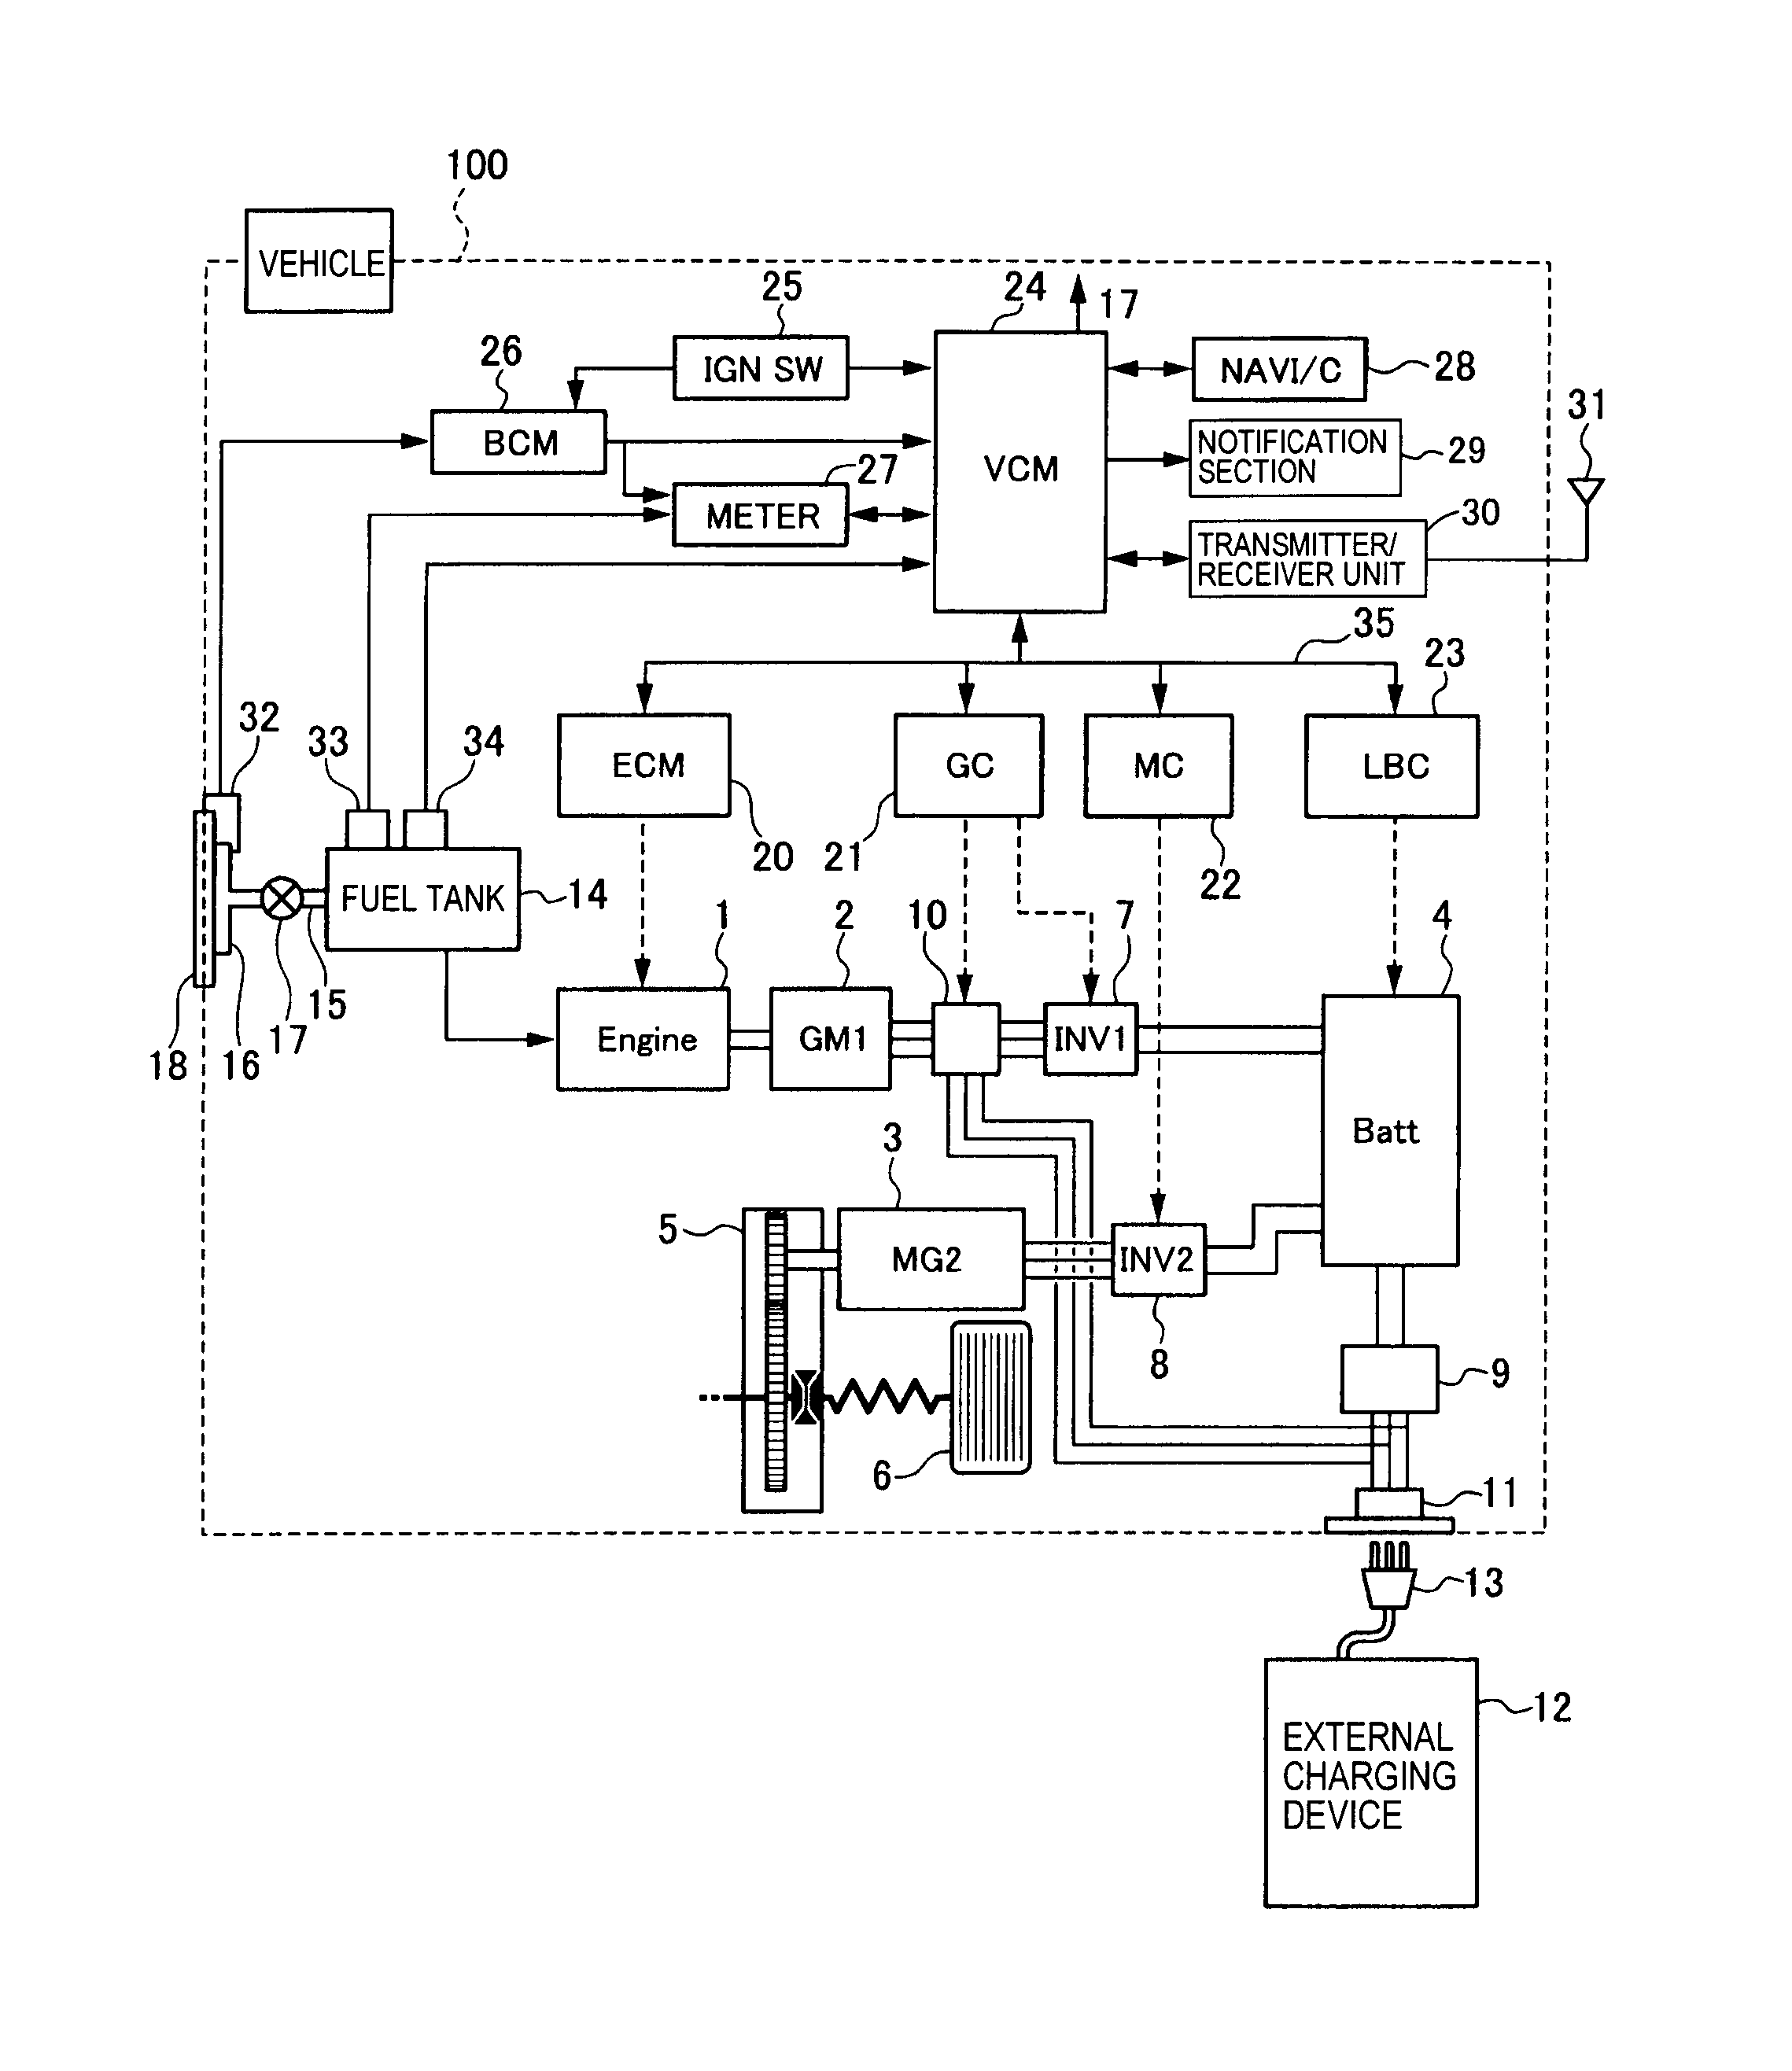 aerator septic system diagram